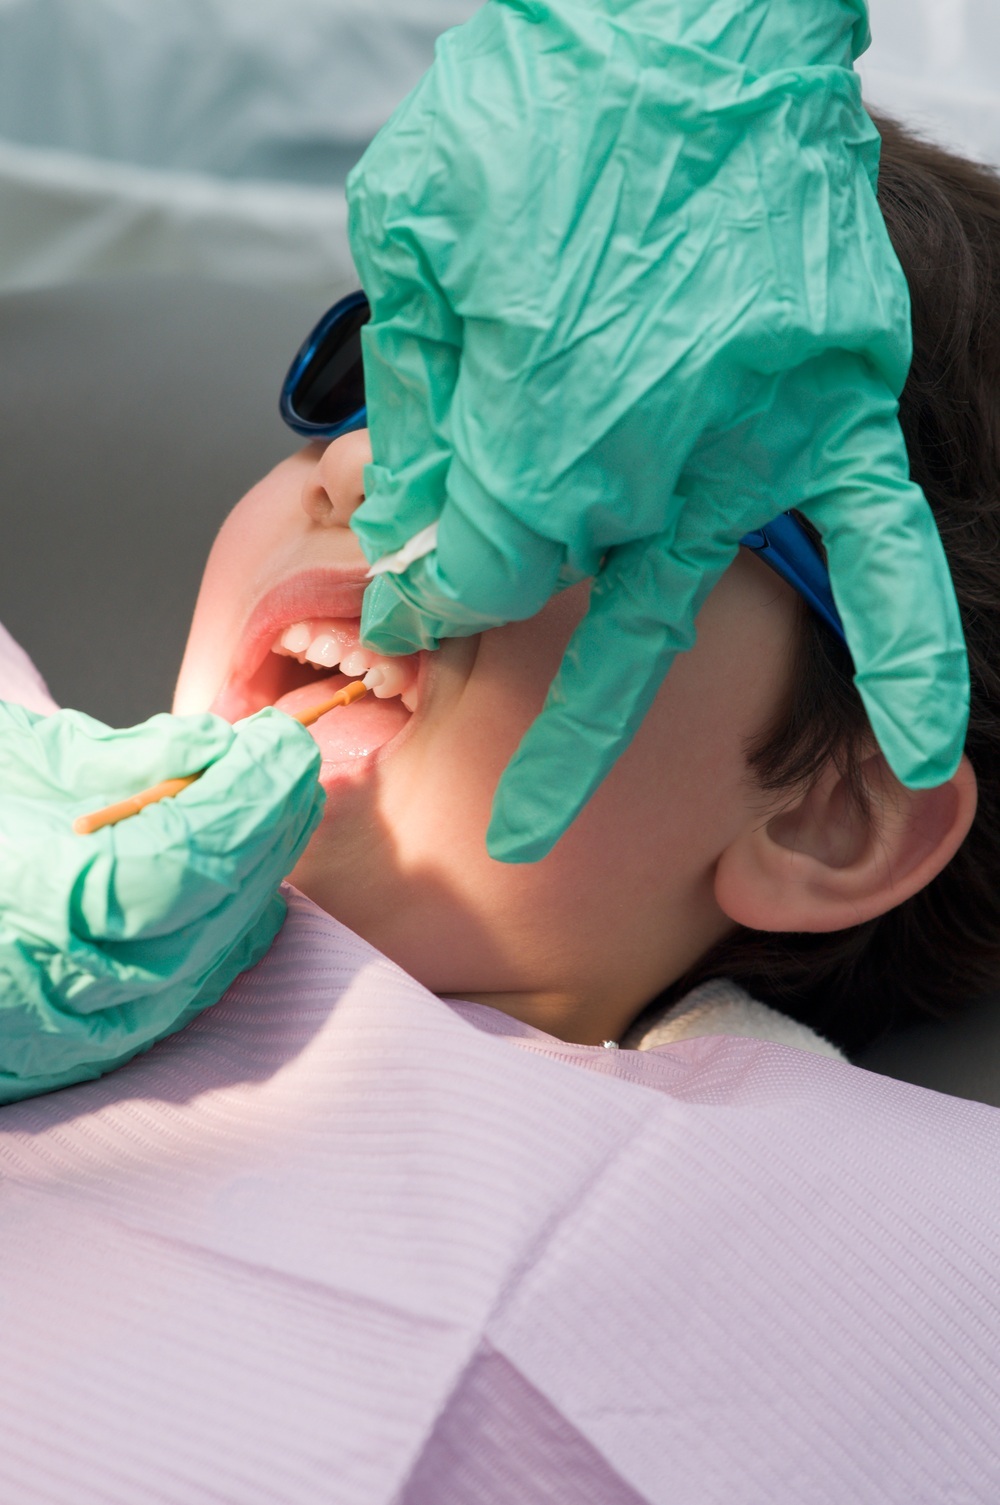 Criança no consultório do dentista recebendo aplicação de flúor nos dentes - foto: nfsphoto/ShutterStock.com